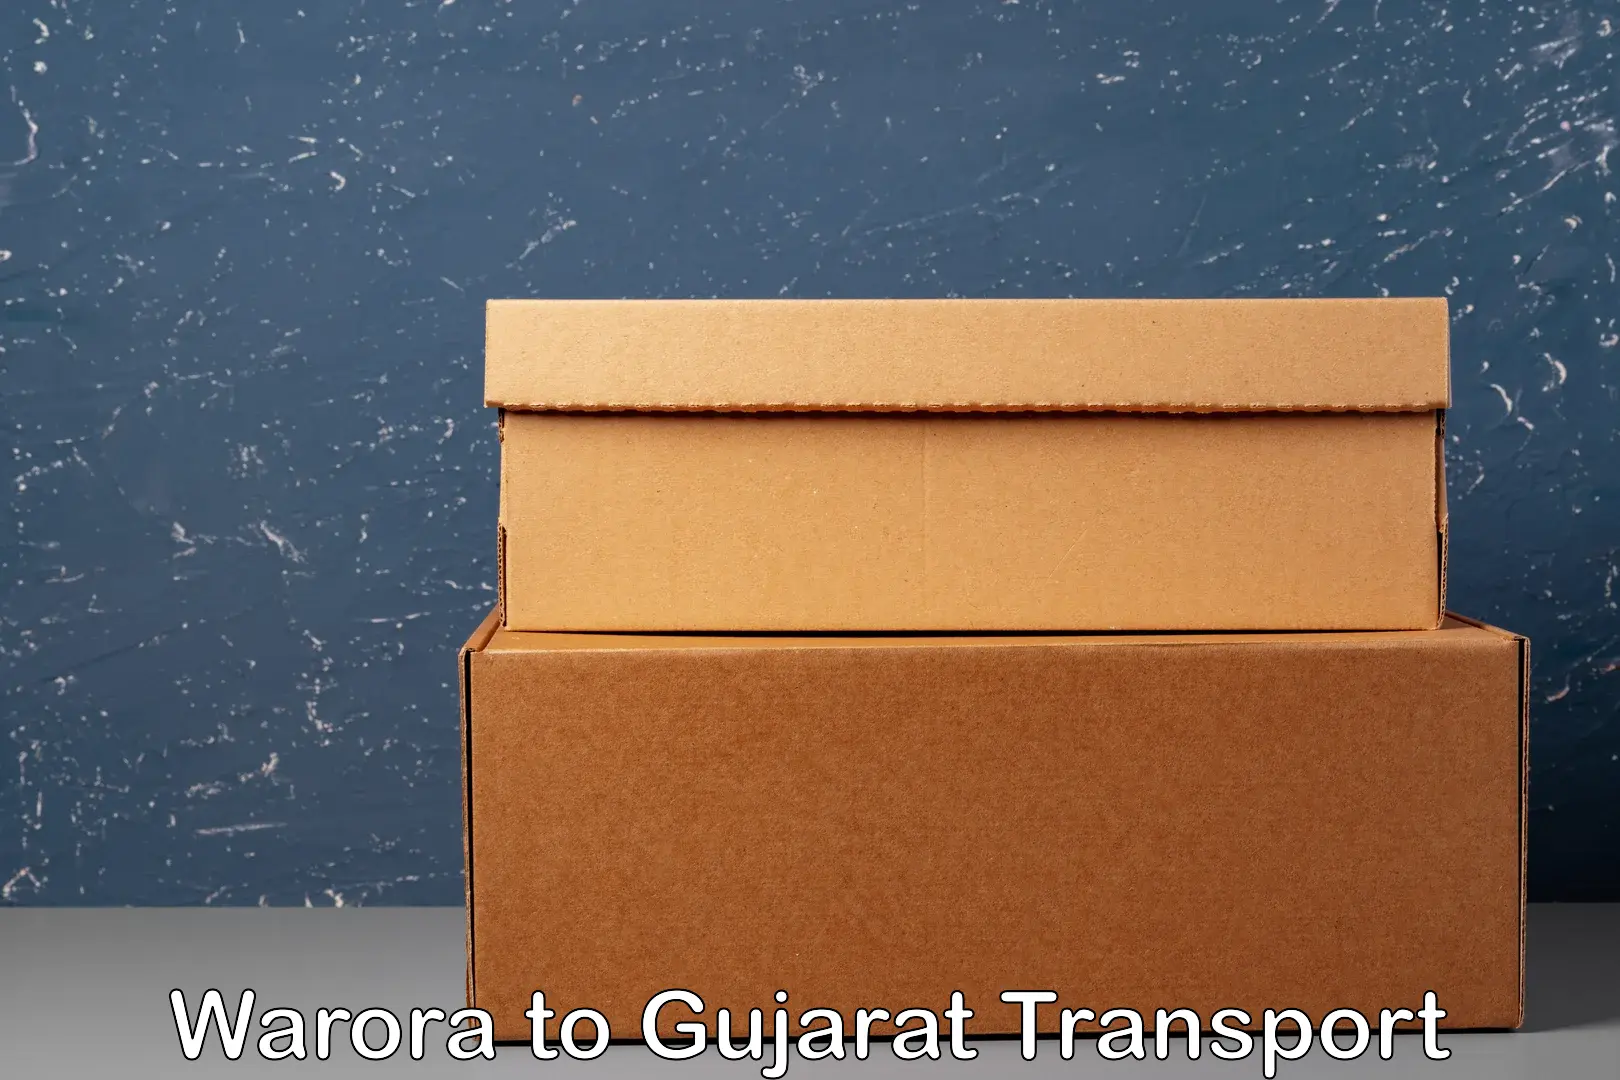 Cargo transport services Warora to Gujarat